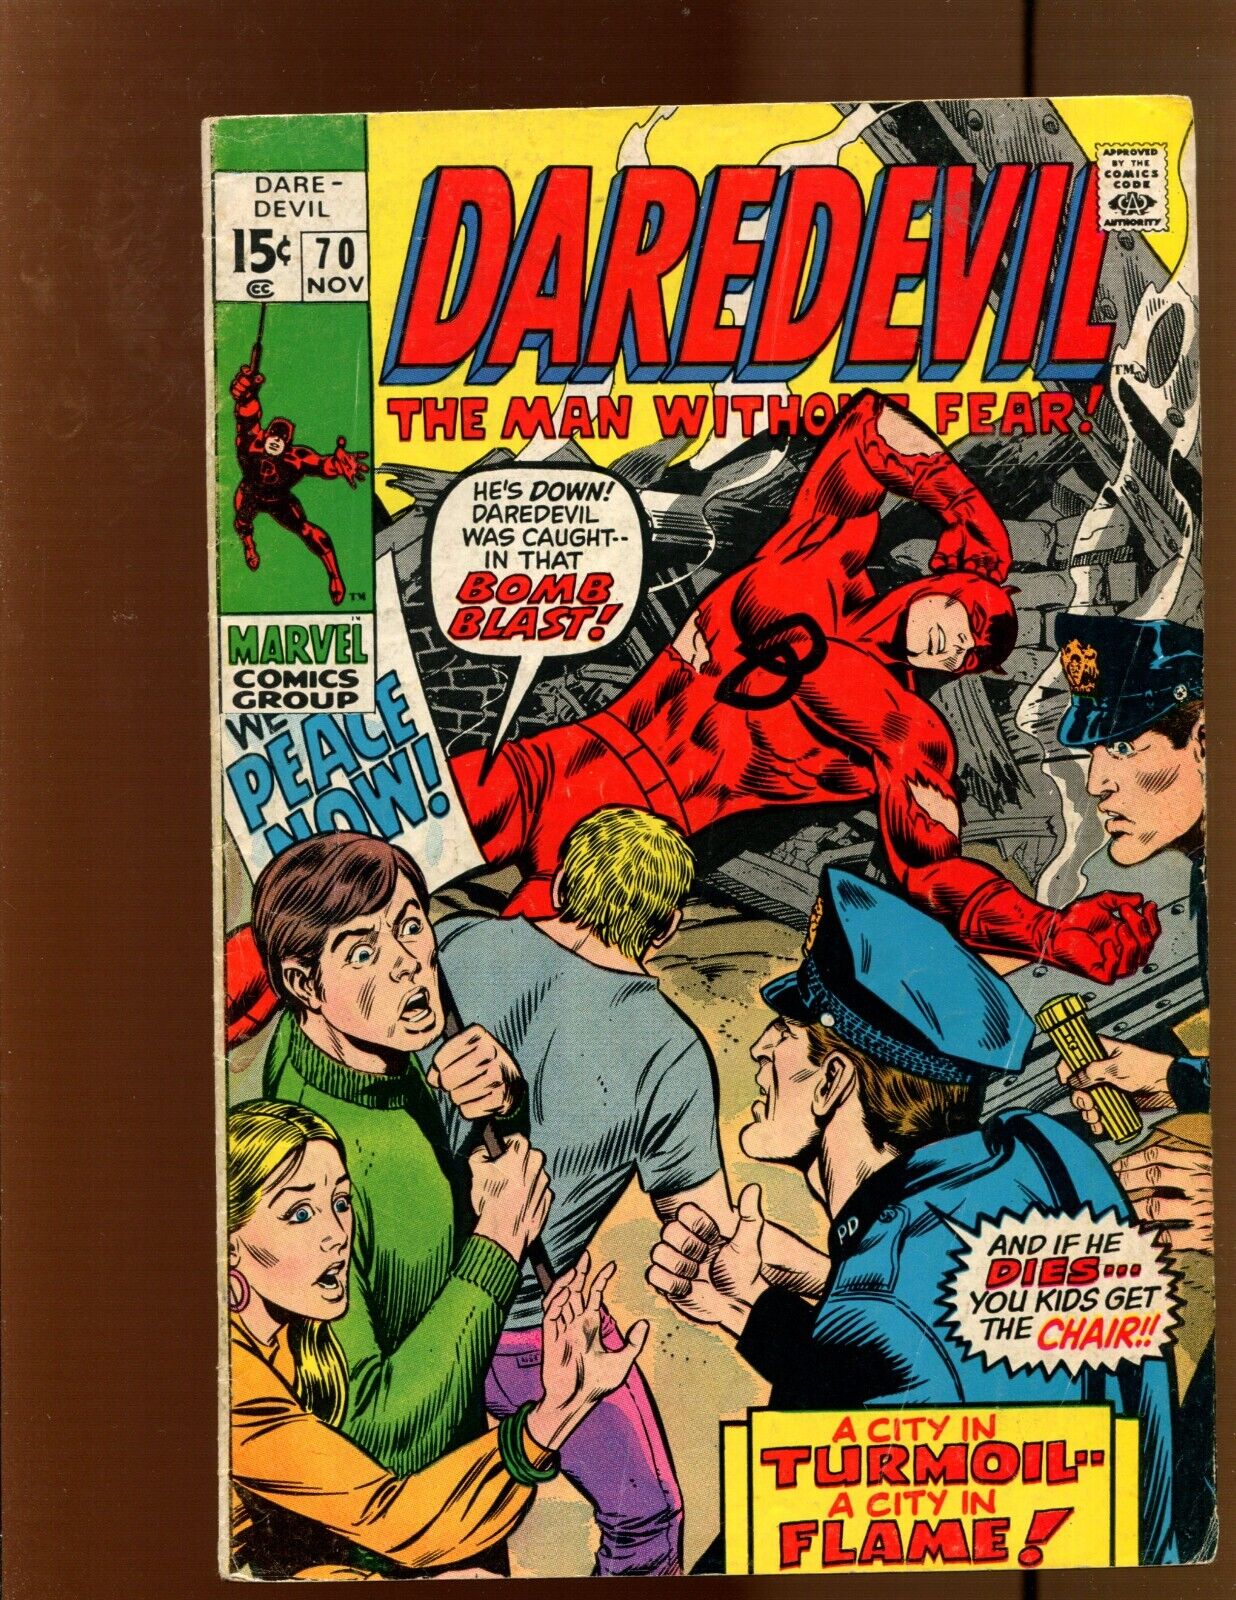 Daredevil #70 - Gene Colan Art (4.5) 1970